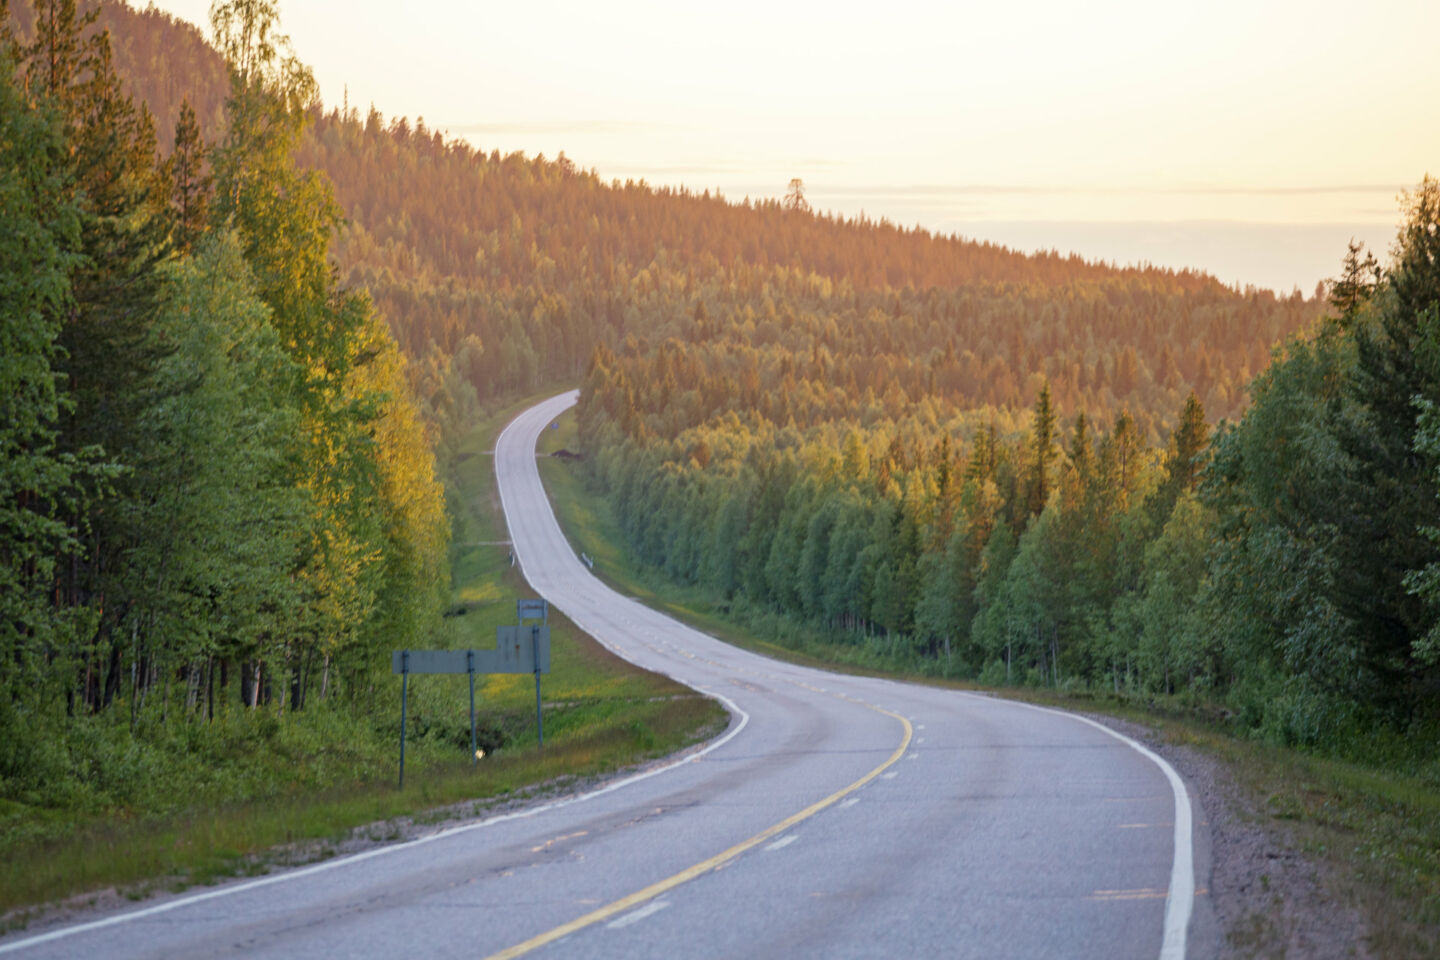 The road to Pello, Finland